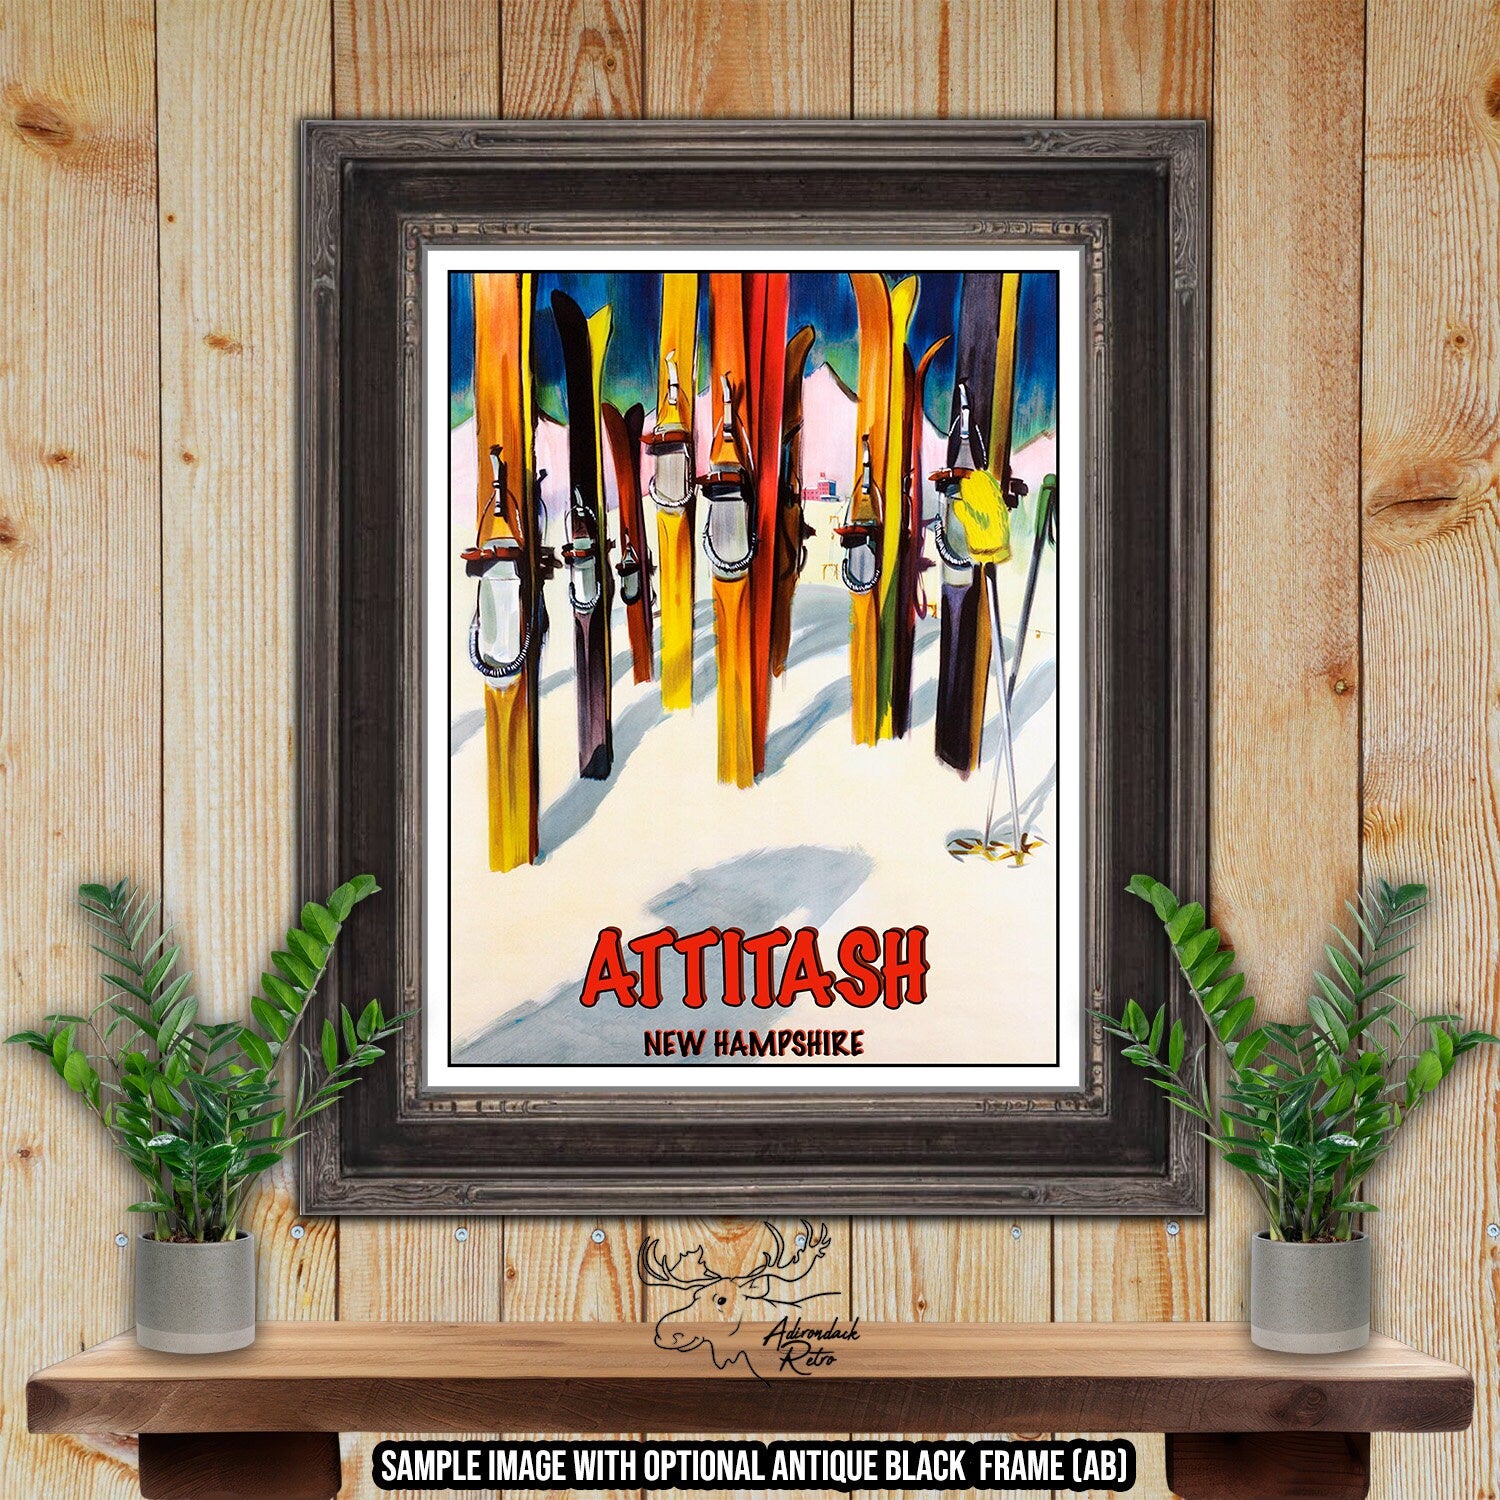 Attitash Ski Resort Print - New Hampshire Retro Ski Resort Poster at Adirondack Retro